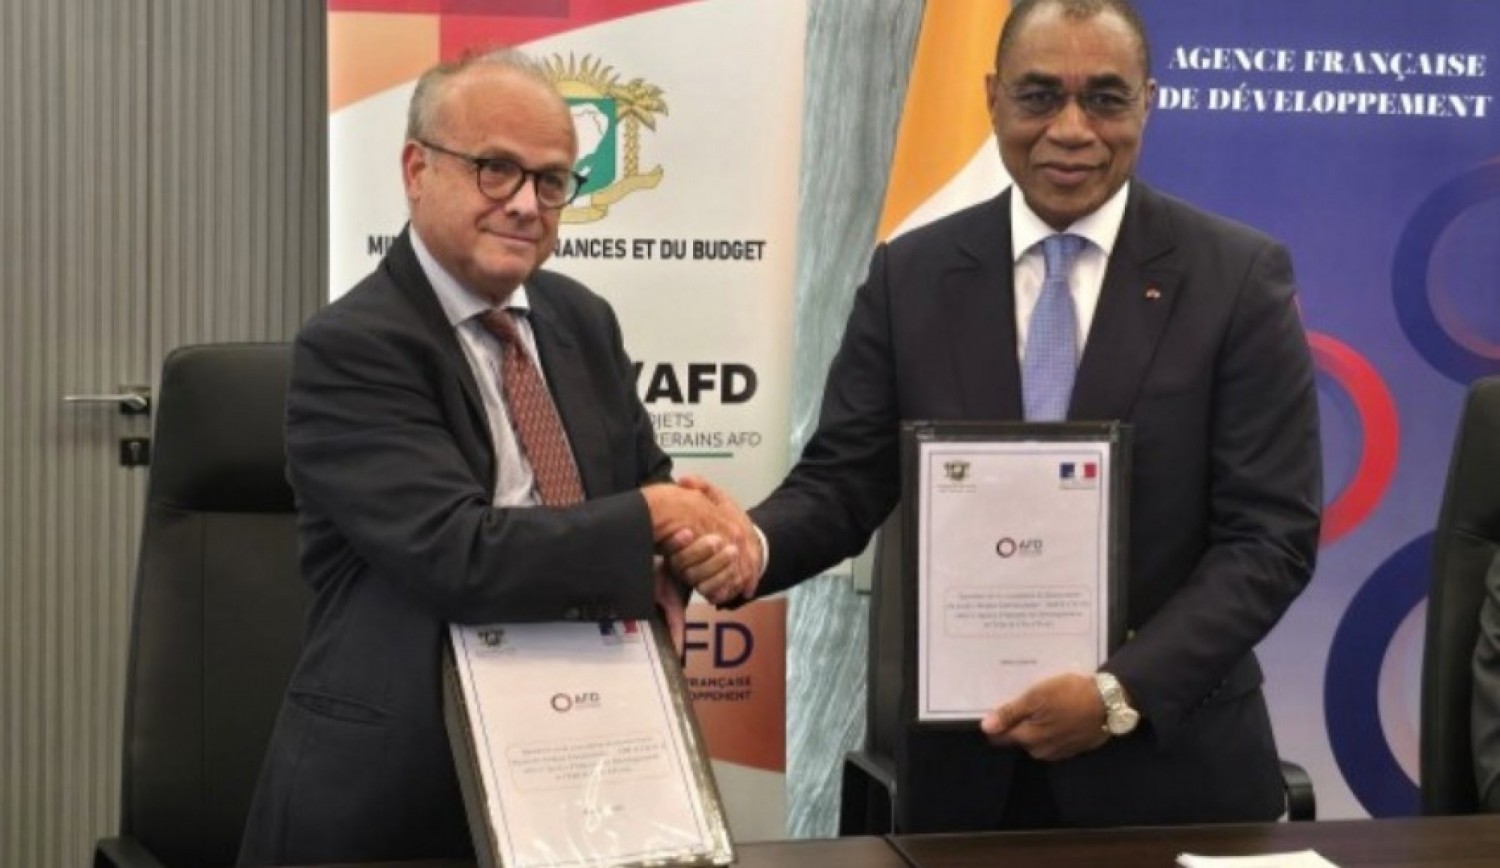 Côte d'Ivoire: Mobilité urbaine, ressources humaines en santé, gouvernance financière, la France accorde trois financements cumulés de 106 milliards FCFA au gouvernement